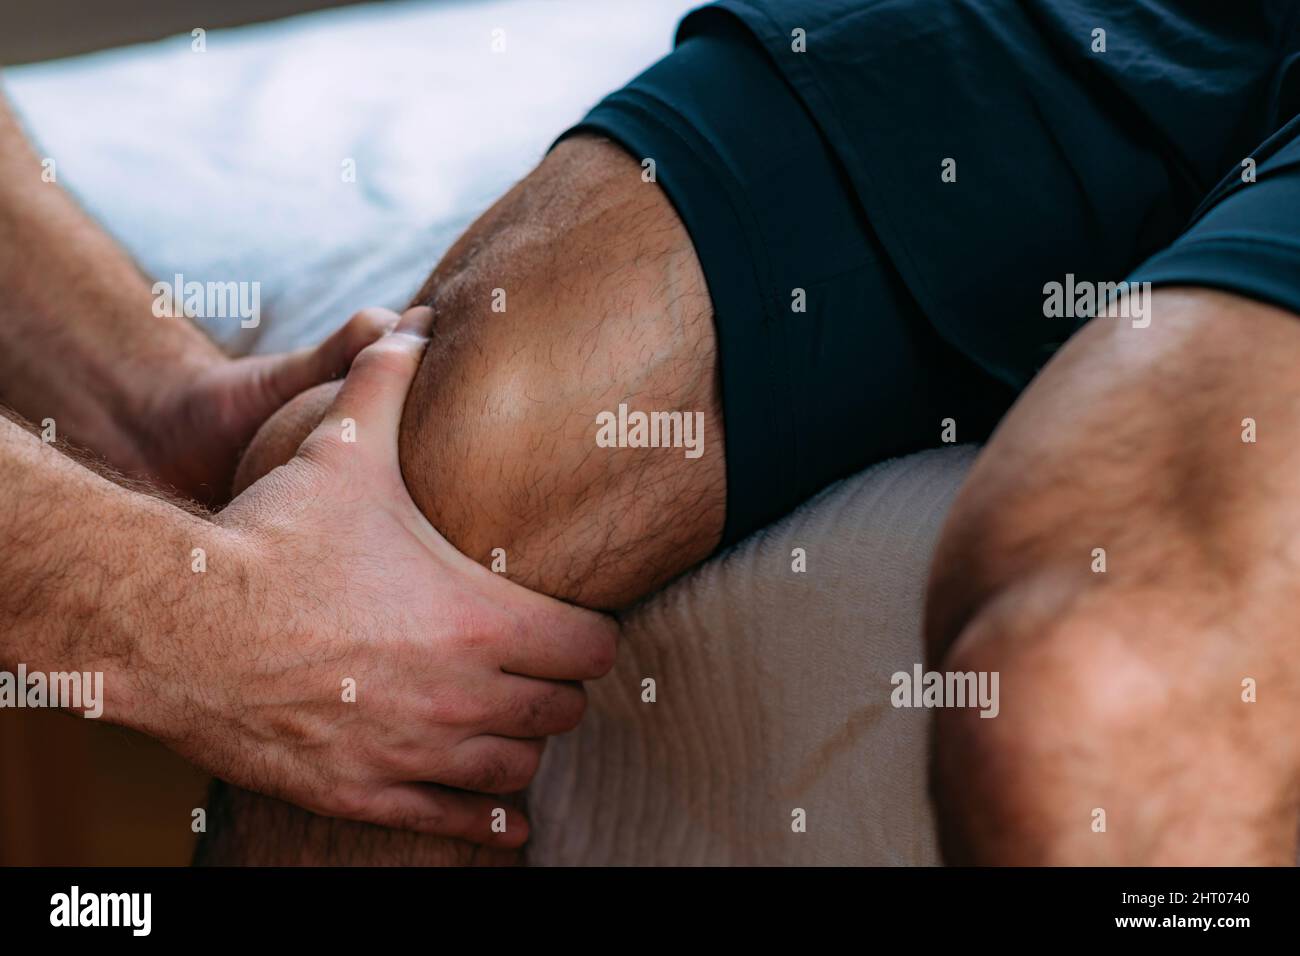 Physiotherapist massaging an injured knee Stock Photo